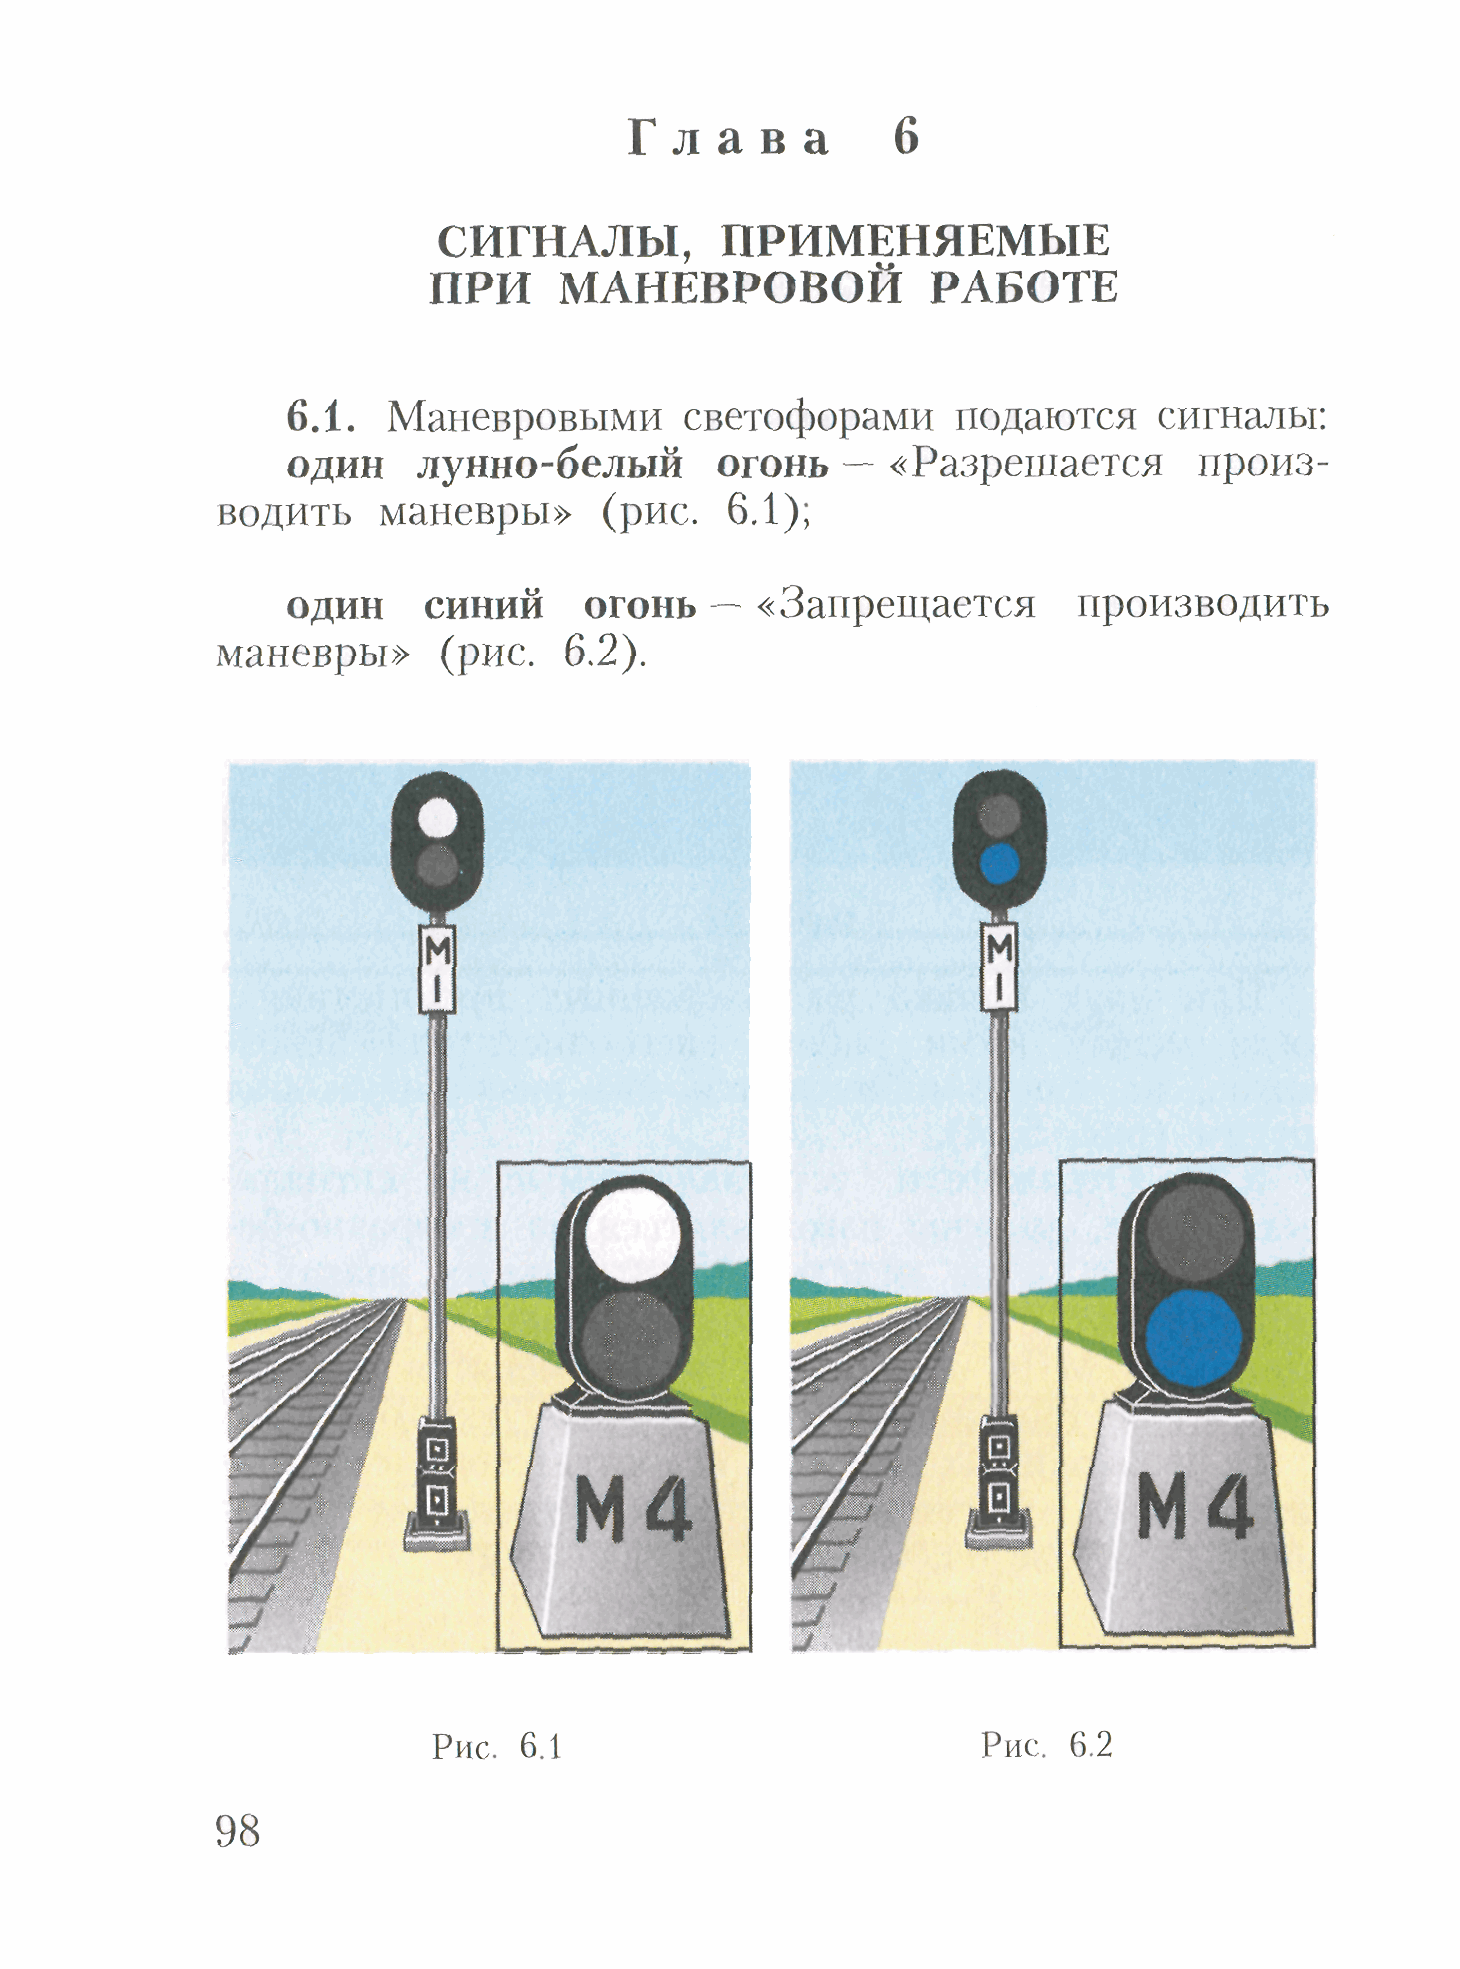 Инструкция по сигнализации на железных дорогах российской федерации    (часть 1)